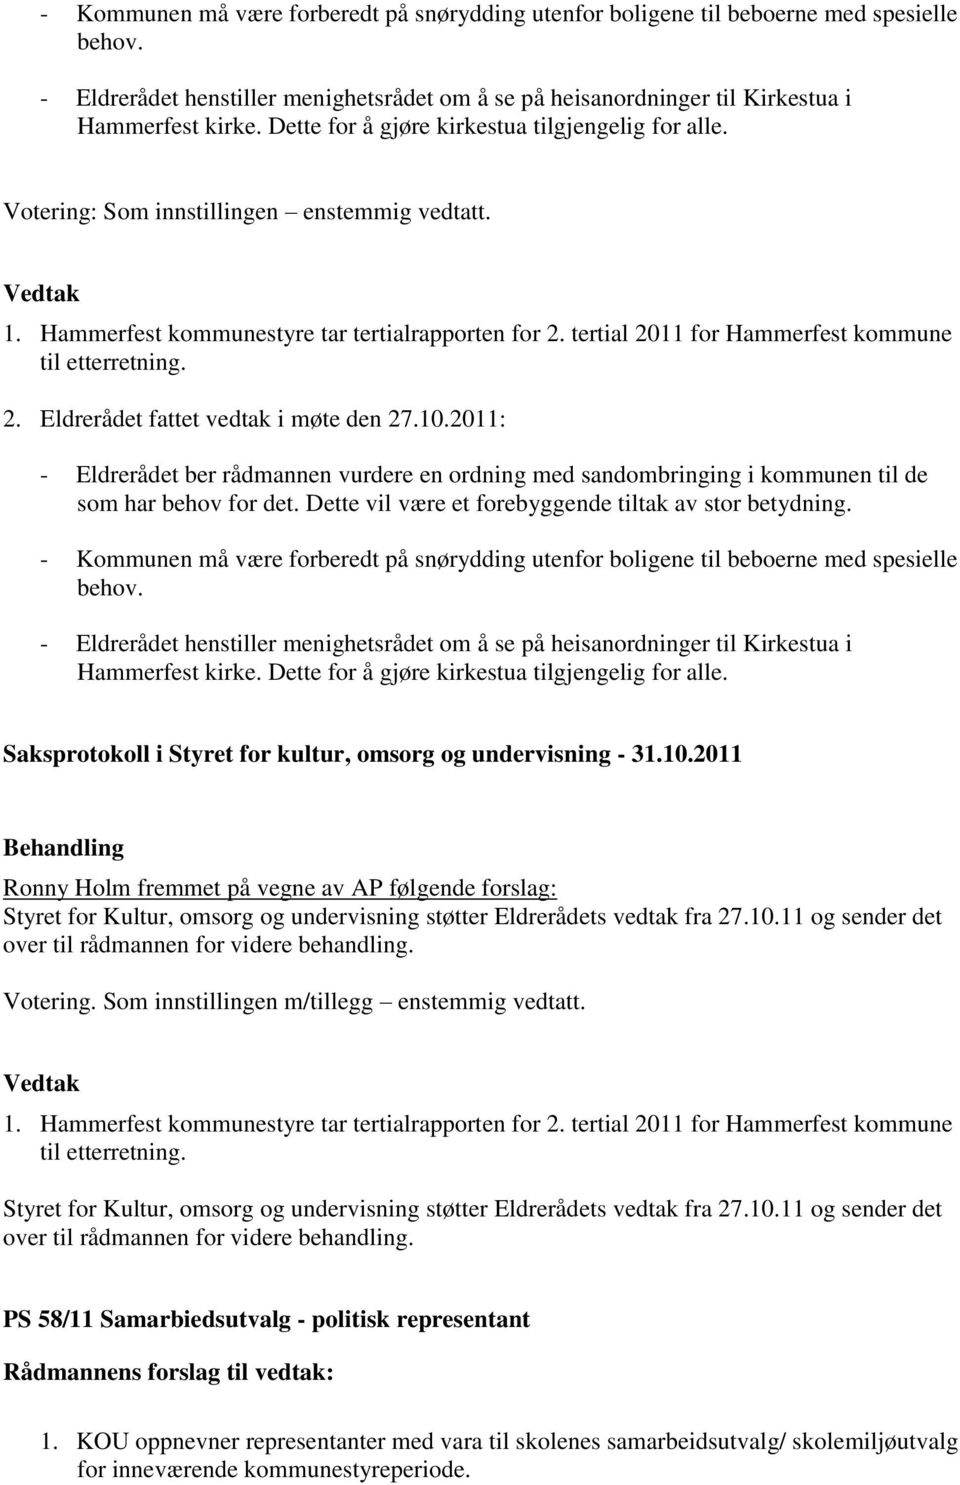 tertial 2011 for Hammerfest kommune til etterretning. 2. Eldrerådet fattet vedtak i møte den 27.10.